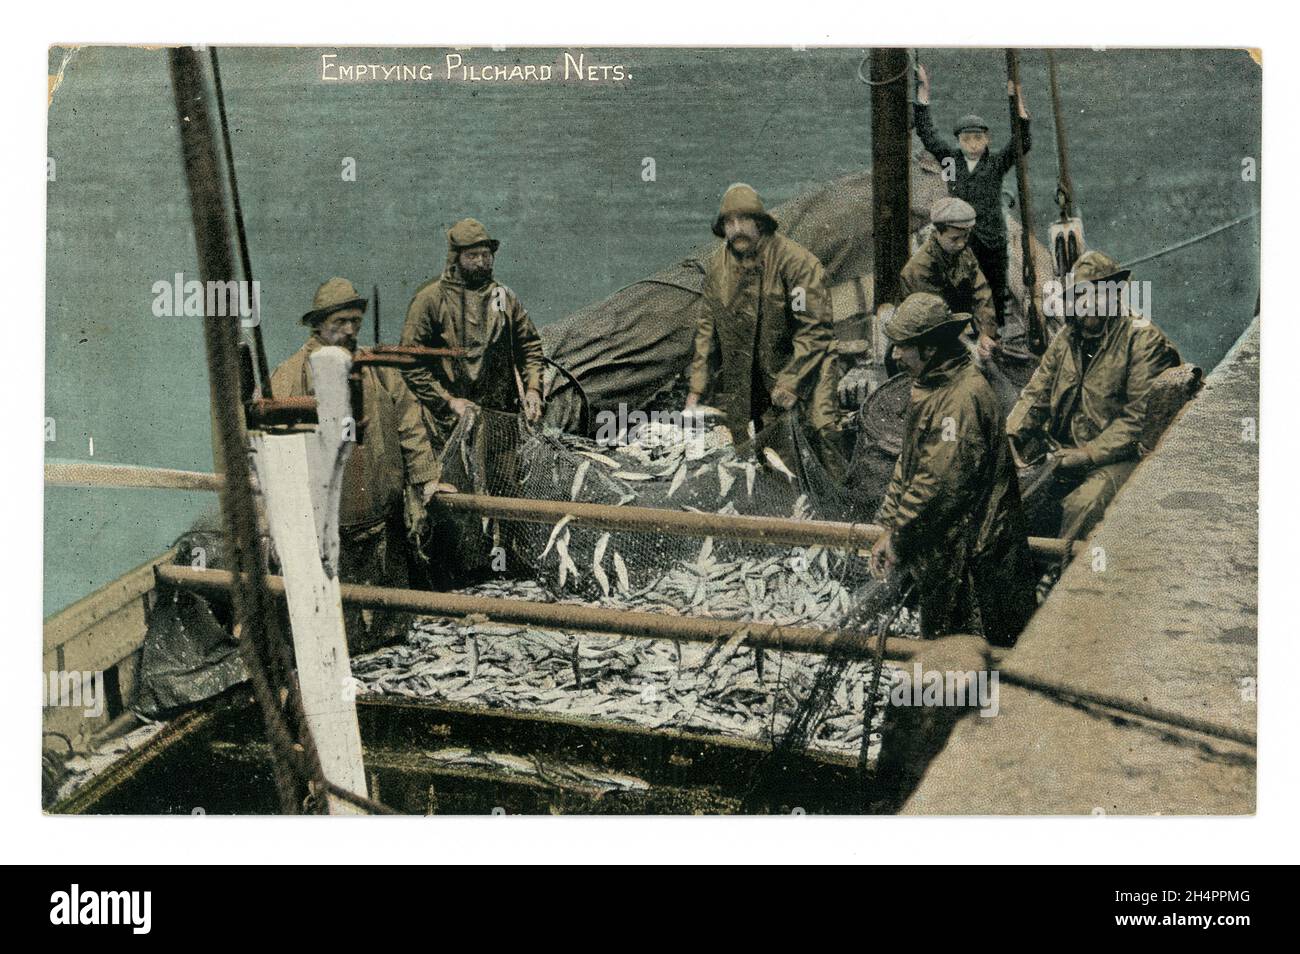 Original Anfang des 20. Jahrhunderts getönte Postkarte von Fischern, die Sardinen aus Netzen entleeren, (möglicherweise Seinennetze) Argall's Serie, um 1910 - Cornwall. Stockfoto